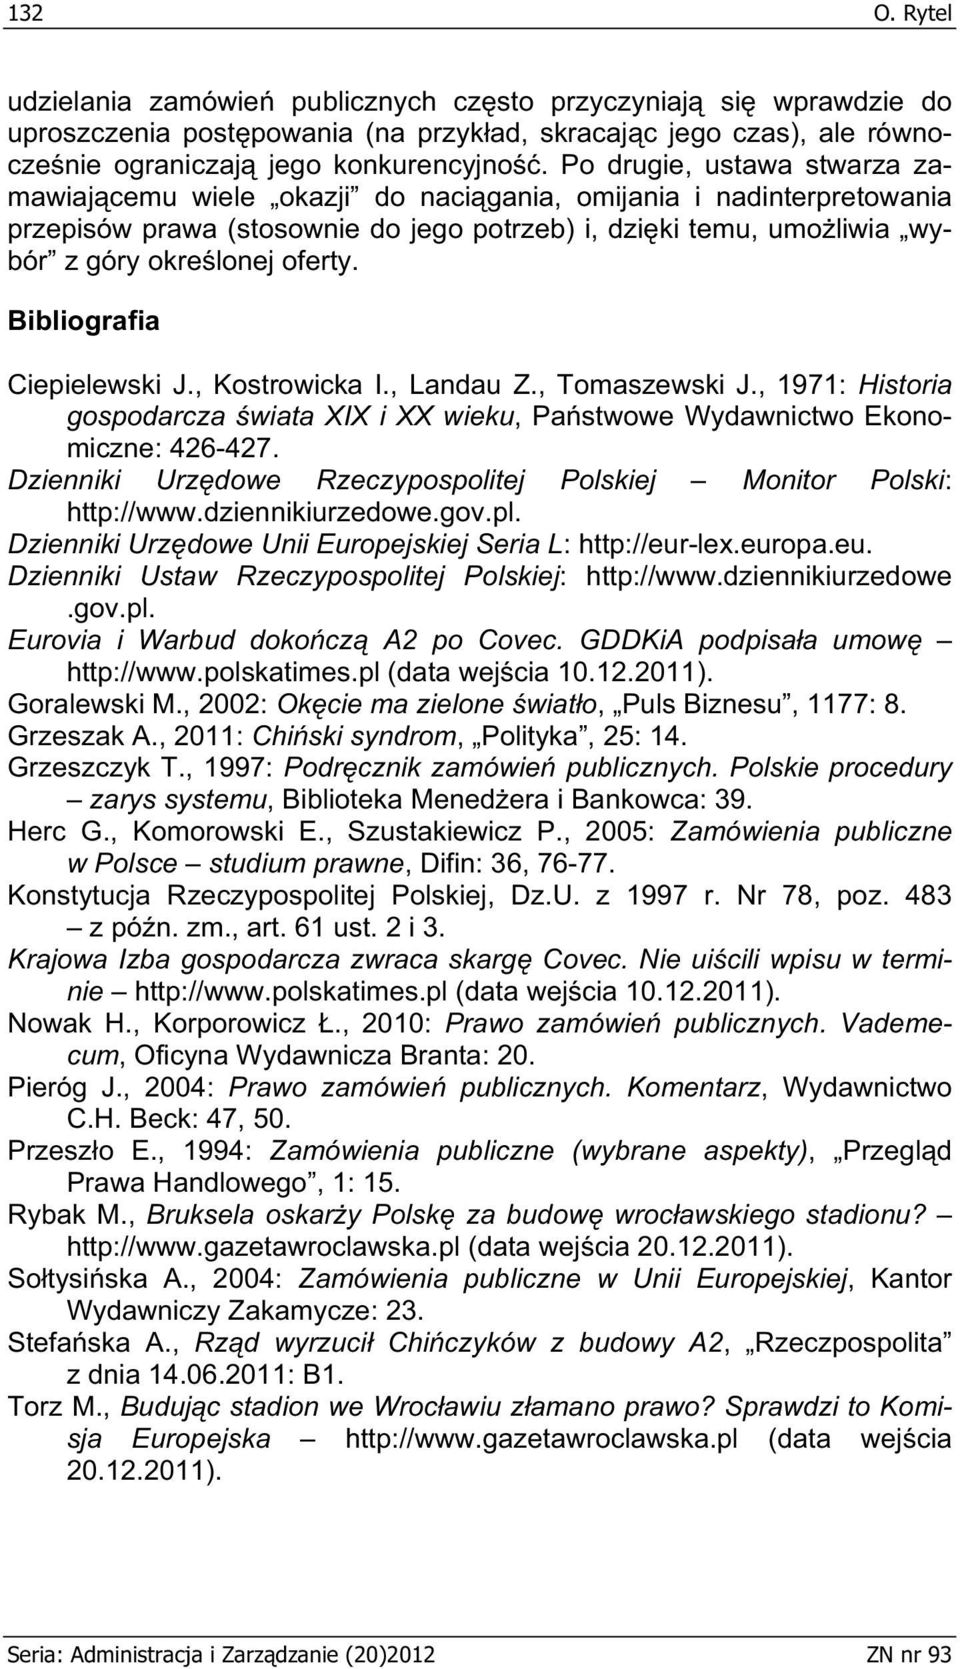 Bibliografia Ciepielewski J., Kostrowicka I., Landau Z., Tomaszewski J., 1971: Historia gospodarcza wiata XIX i XX wieku, Pa stwowe Wydawnictwo Ekonomiczne: 426-427.